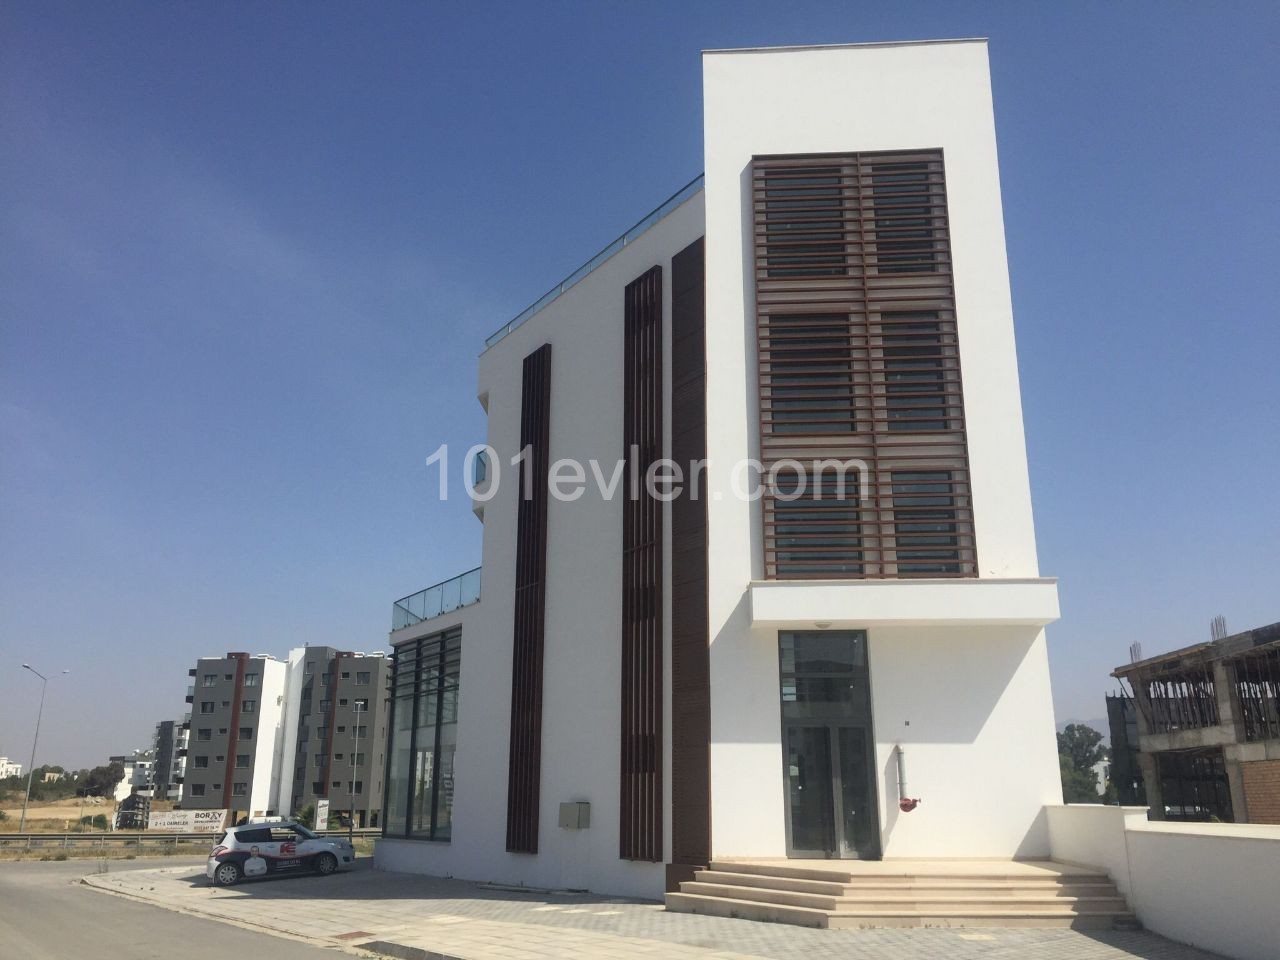 Komplettes Gebäude zur Miete auf Nikosia Dereboyu Straße (Plaza) 8,000 STG 1200 m2 mit monatlicher Zahlung ** 